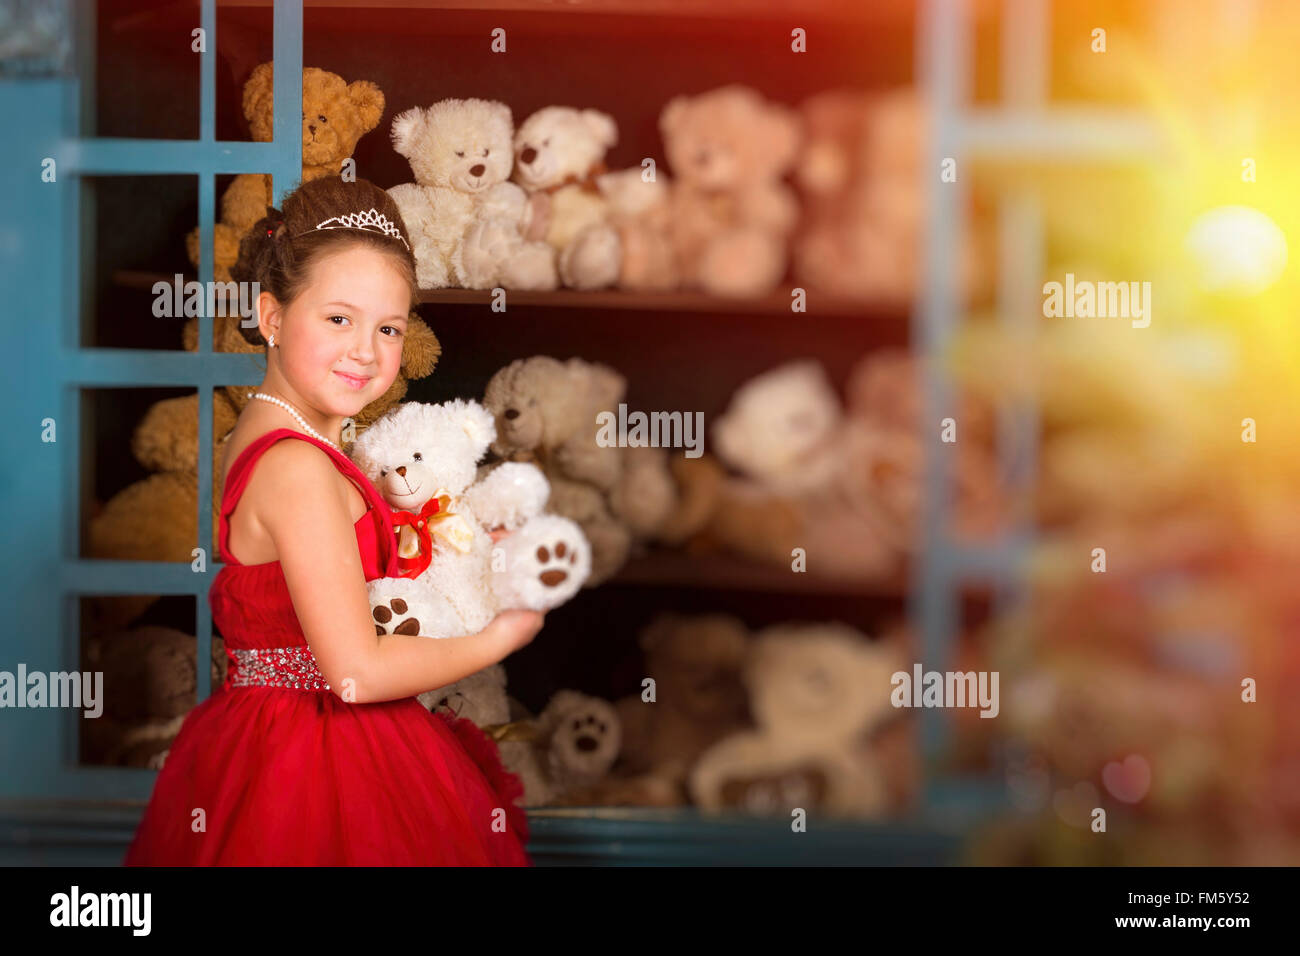 Adorabile bambina vestito in un lussureggiante abito rosso, abbracciando un orsacchiotto di peluche accanto alla finestra con i giocattoli Foto Stock